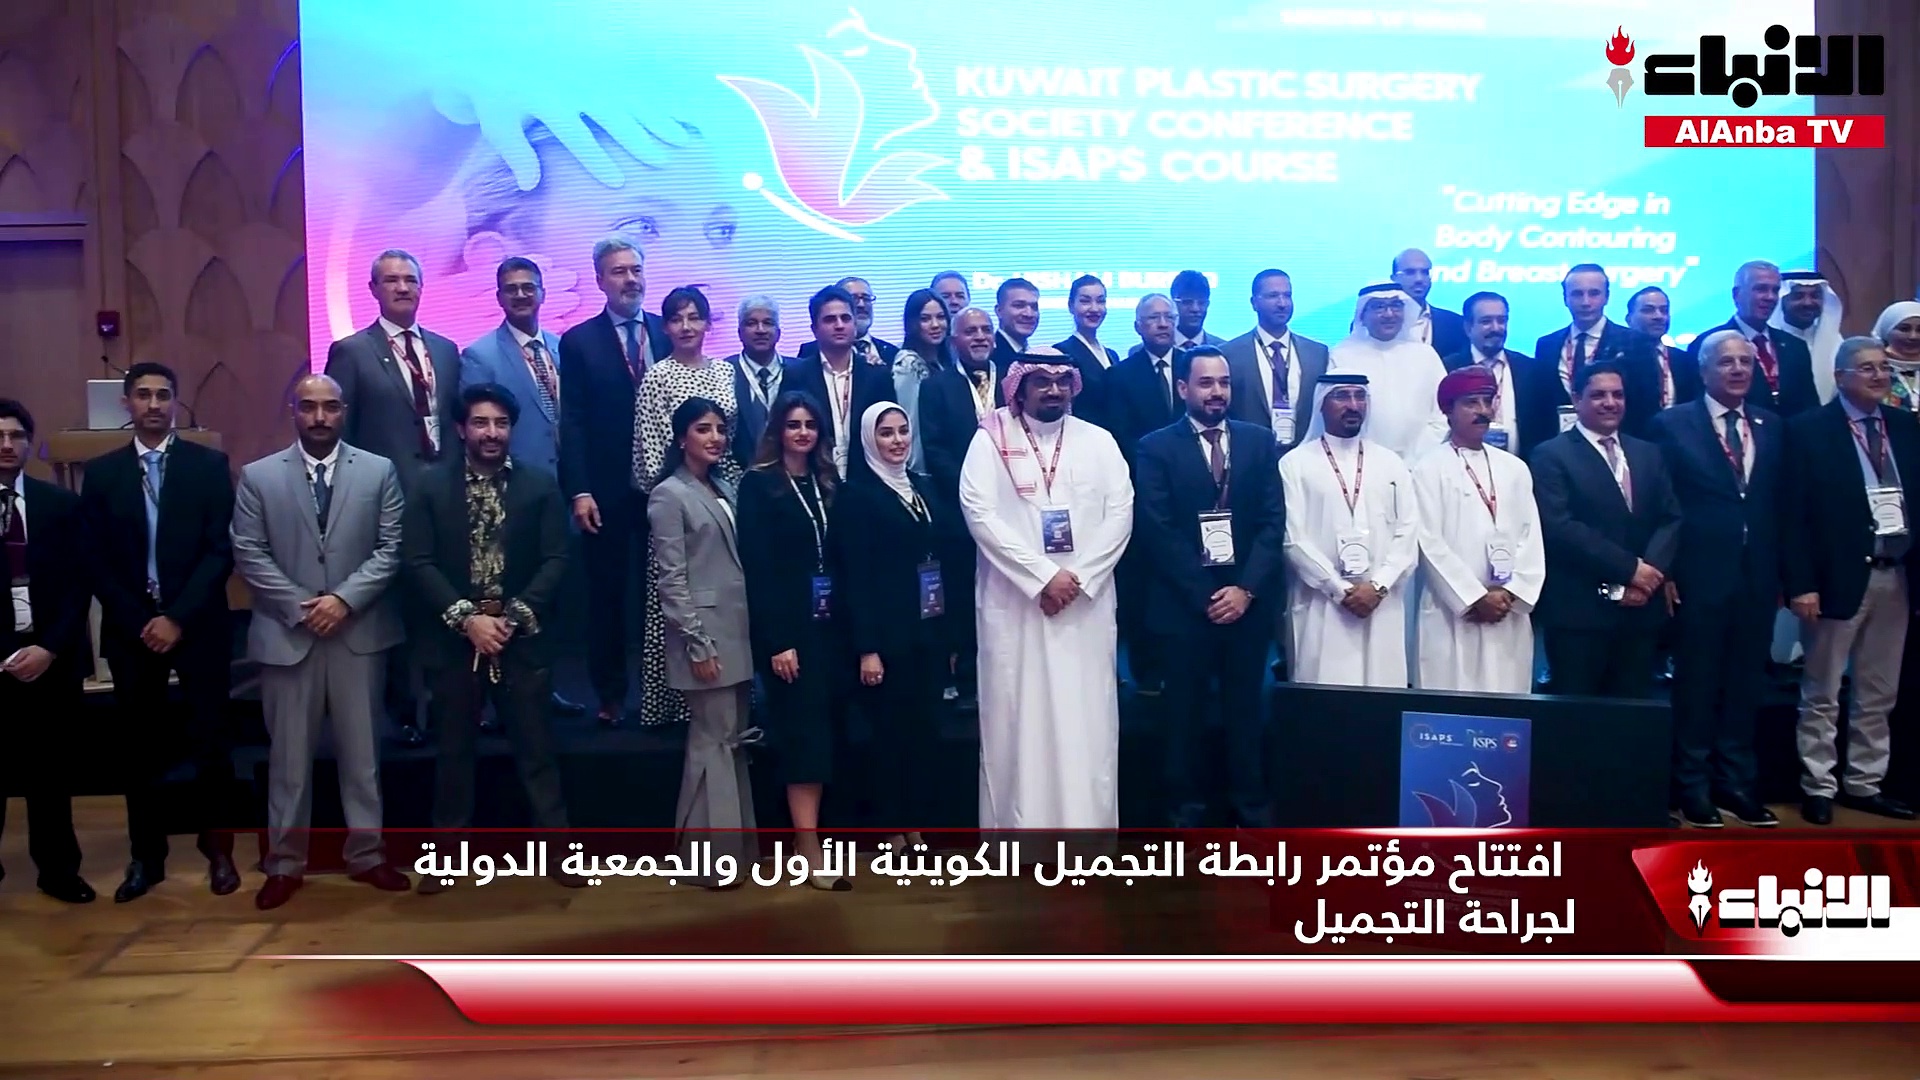 افتتاح مؤتمر رابطة التجميل الكويتية الأول والجمعية الدولية لجراحة التجميل